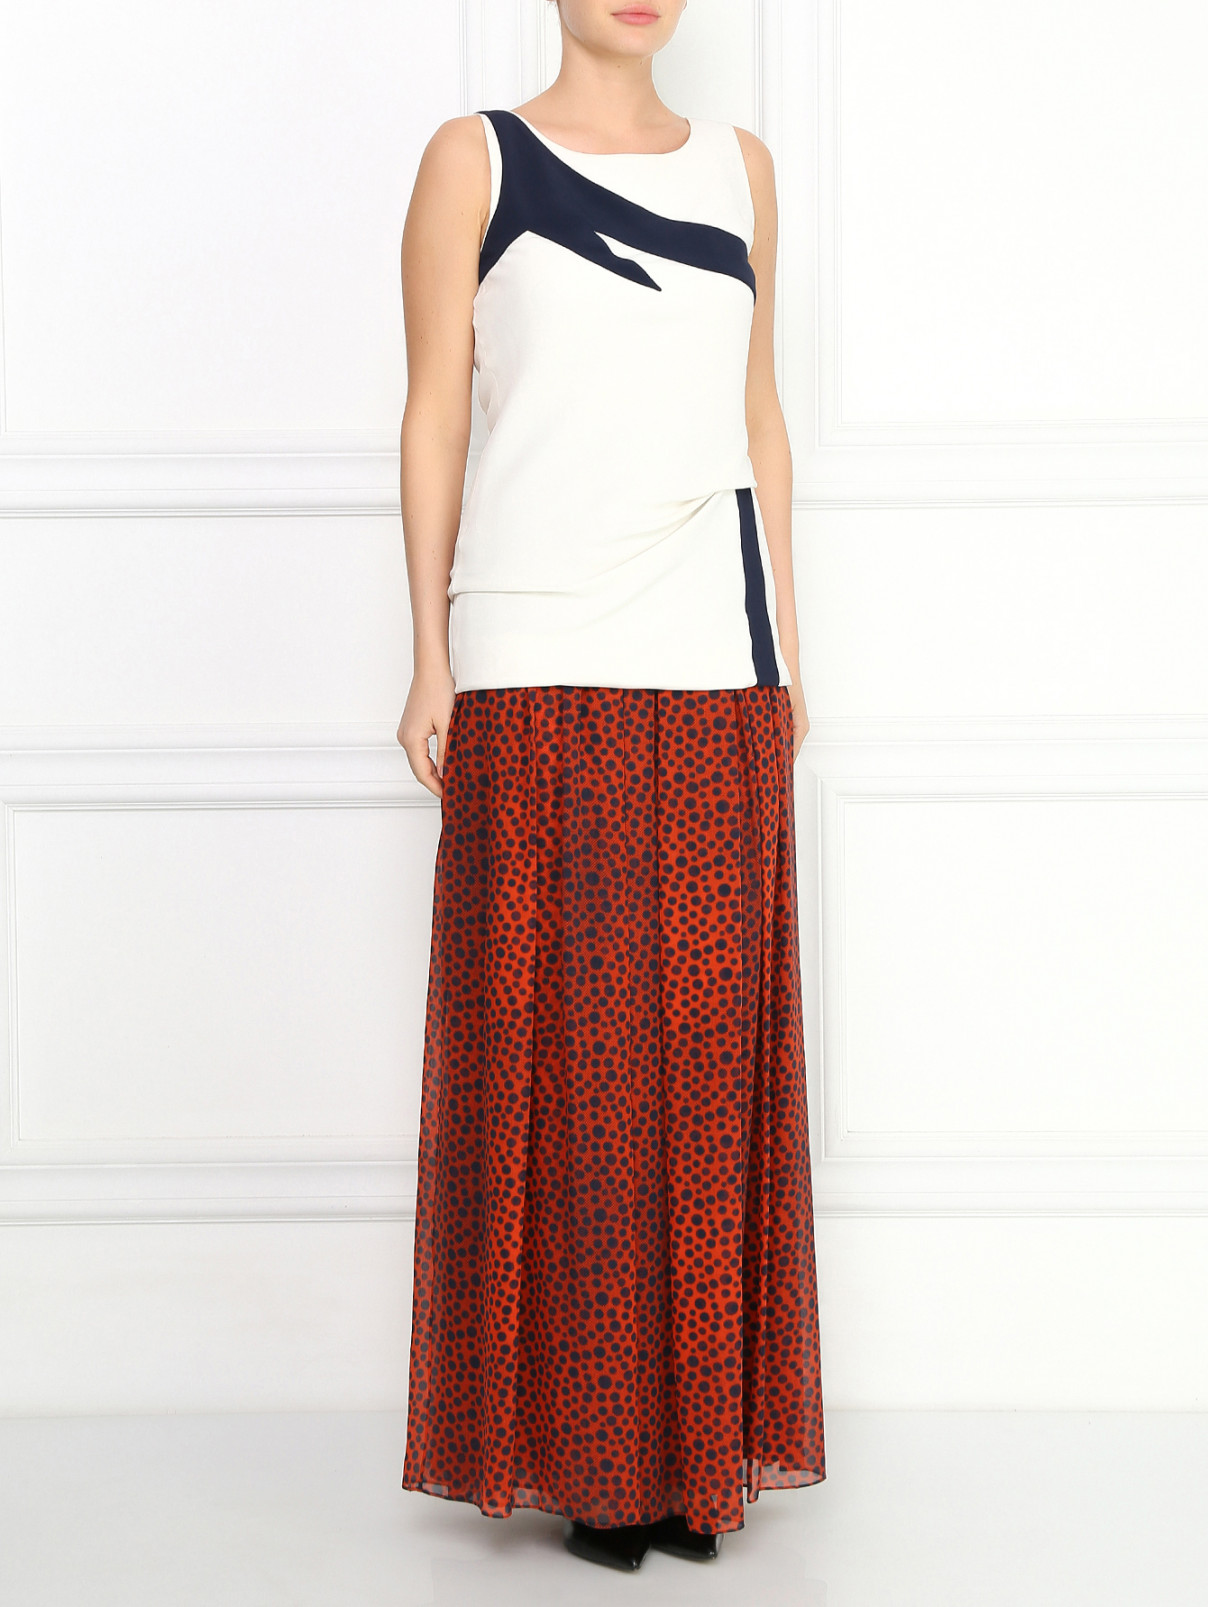 Шелковая юбка-макси с узором "горох" Jean Paul Gaultier  –  Модель Общий вид  – Цвет:  Узор